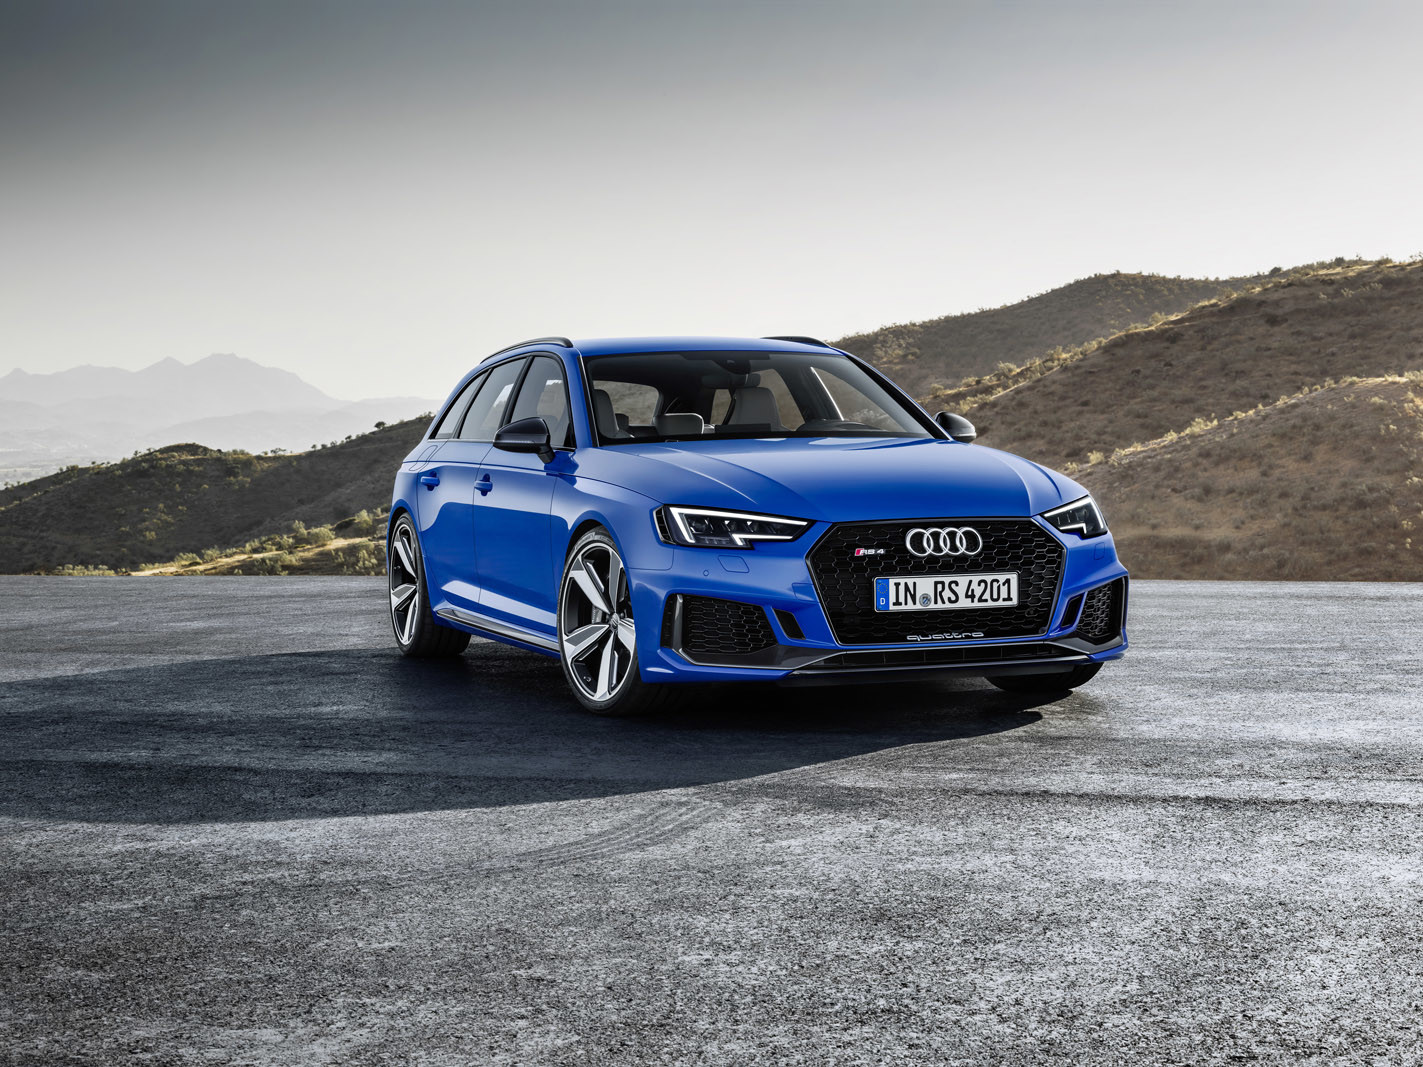 Audi lanzará 13 nuevos modelos deportivos S, R y RS en 2019